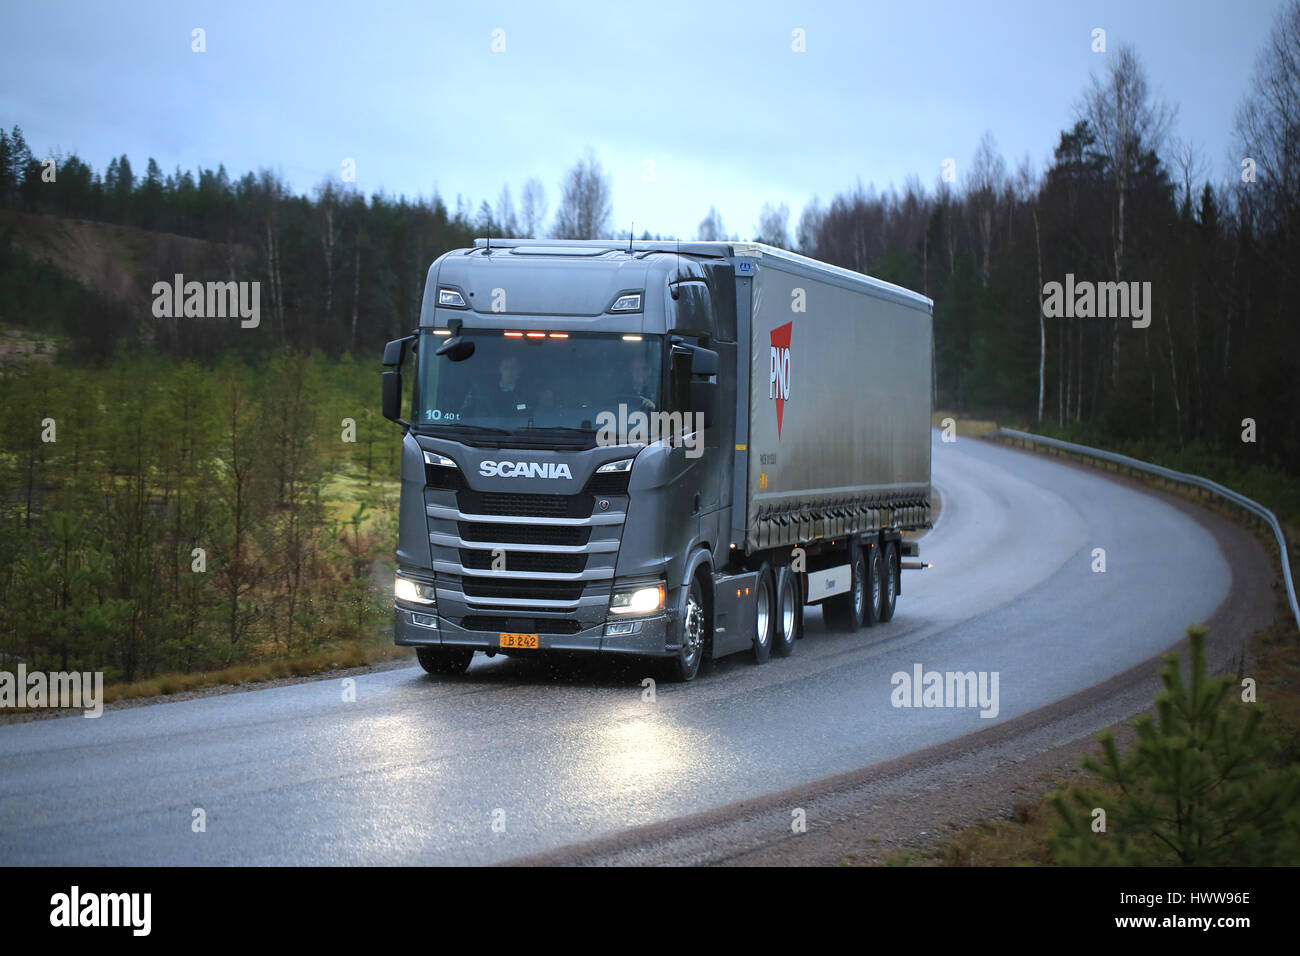 LOHJA, Finlandia - 24 novembre 2016: Nuova Generazione Scania R carrello su strada nel mese di novembre il nevischio e pioggia. Scania Oy presenta il loro nuovo camion rang Foto Stock